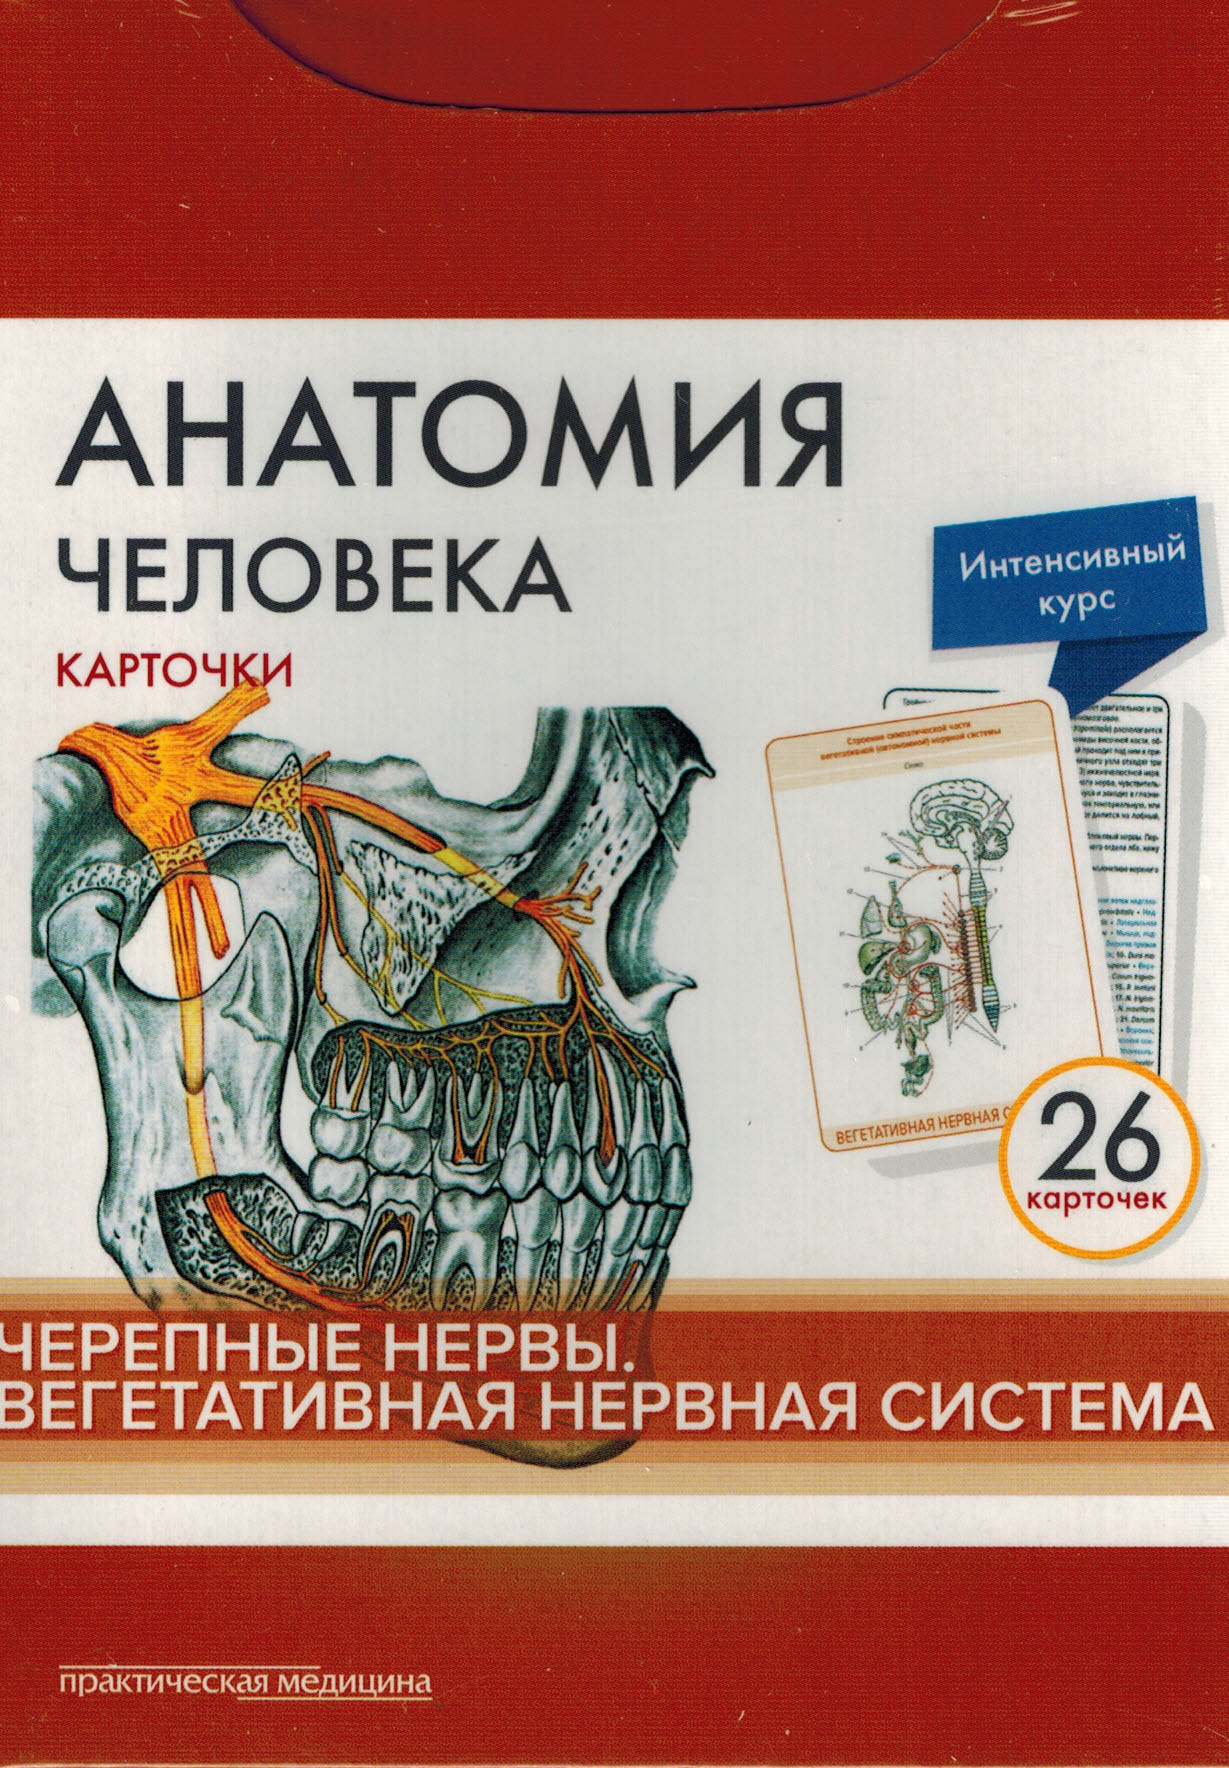 Каталог Анатомия человека: карточки (26 шт). Черепные нервы. Вегетативная нервная система kart1.jpg